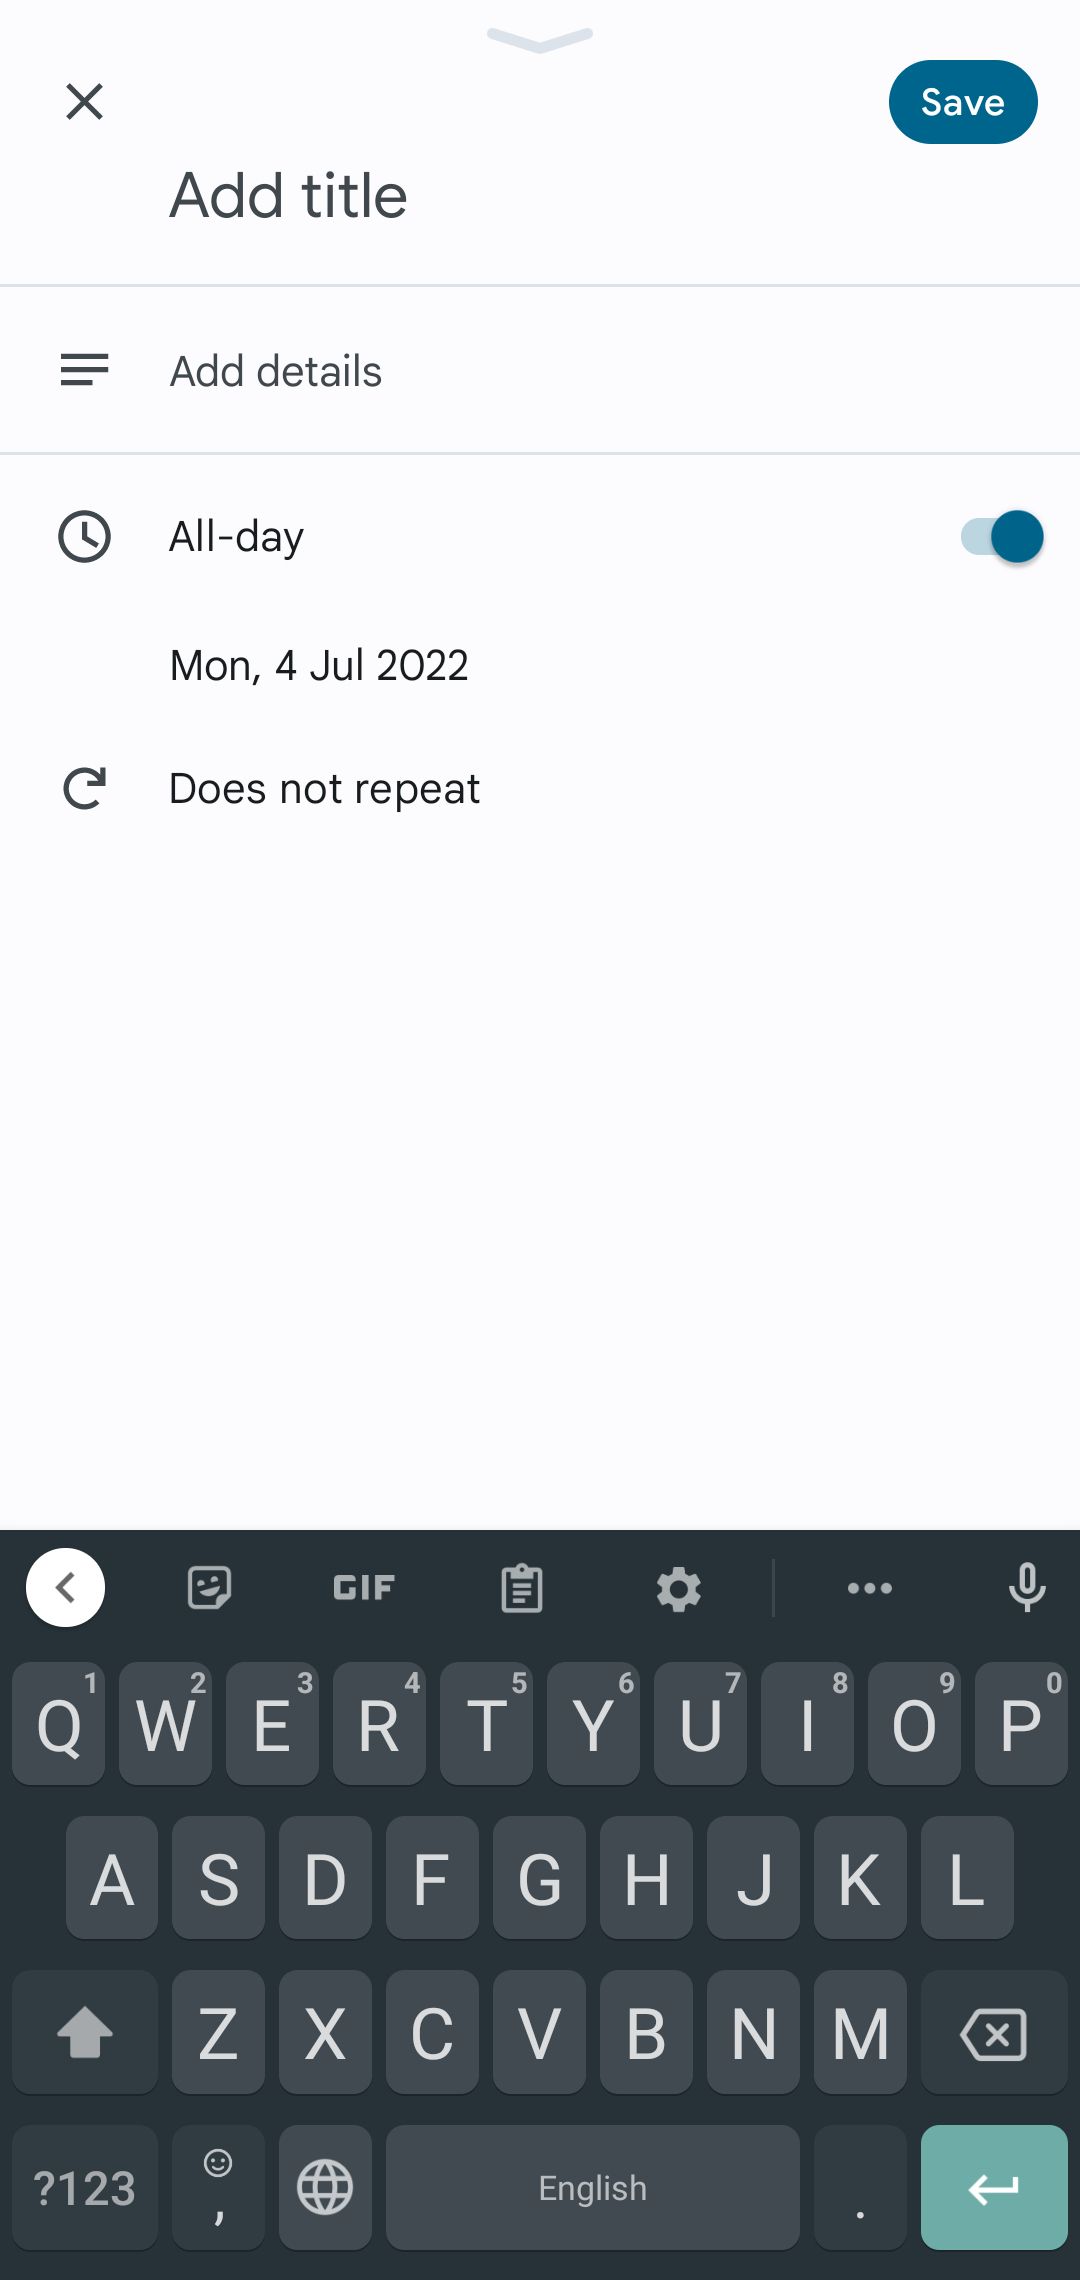 Creating Task on Google Calendar